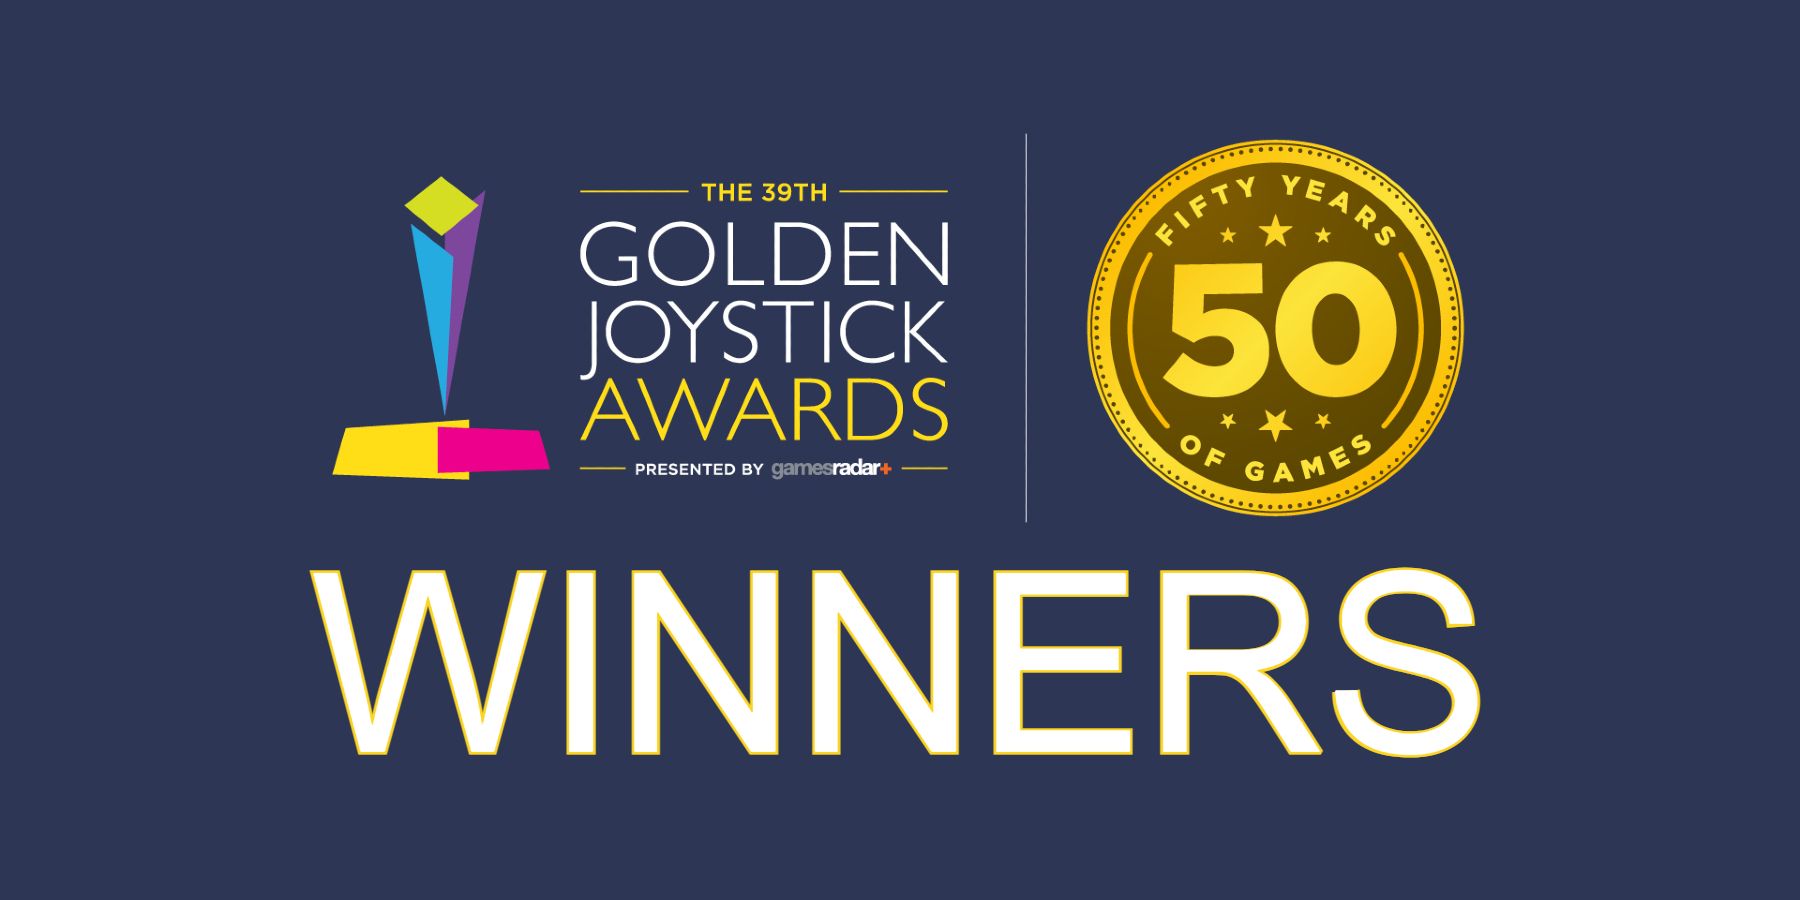 Golden Joystick Awards 2021 Winners Announced